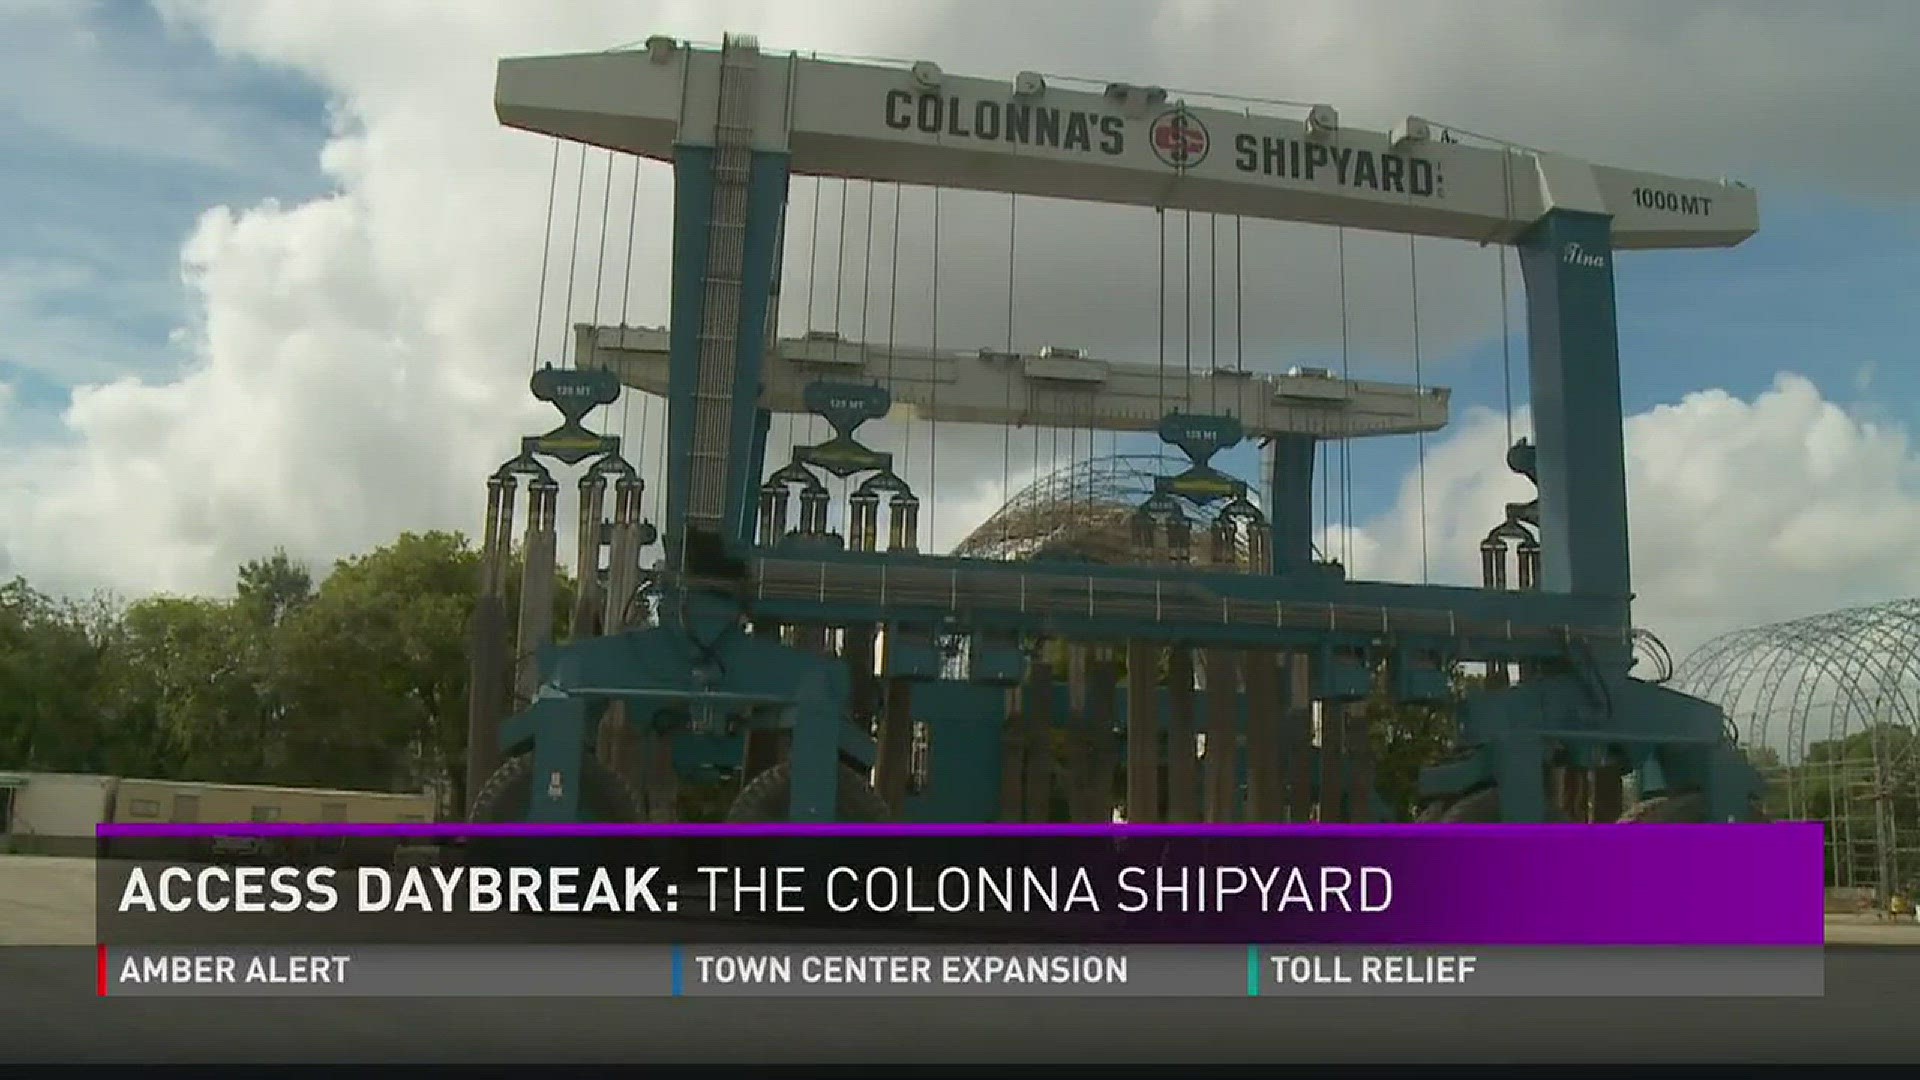 Access Daybreak: The Colonna Shipyard